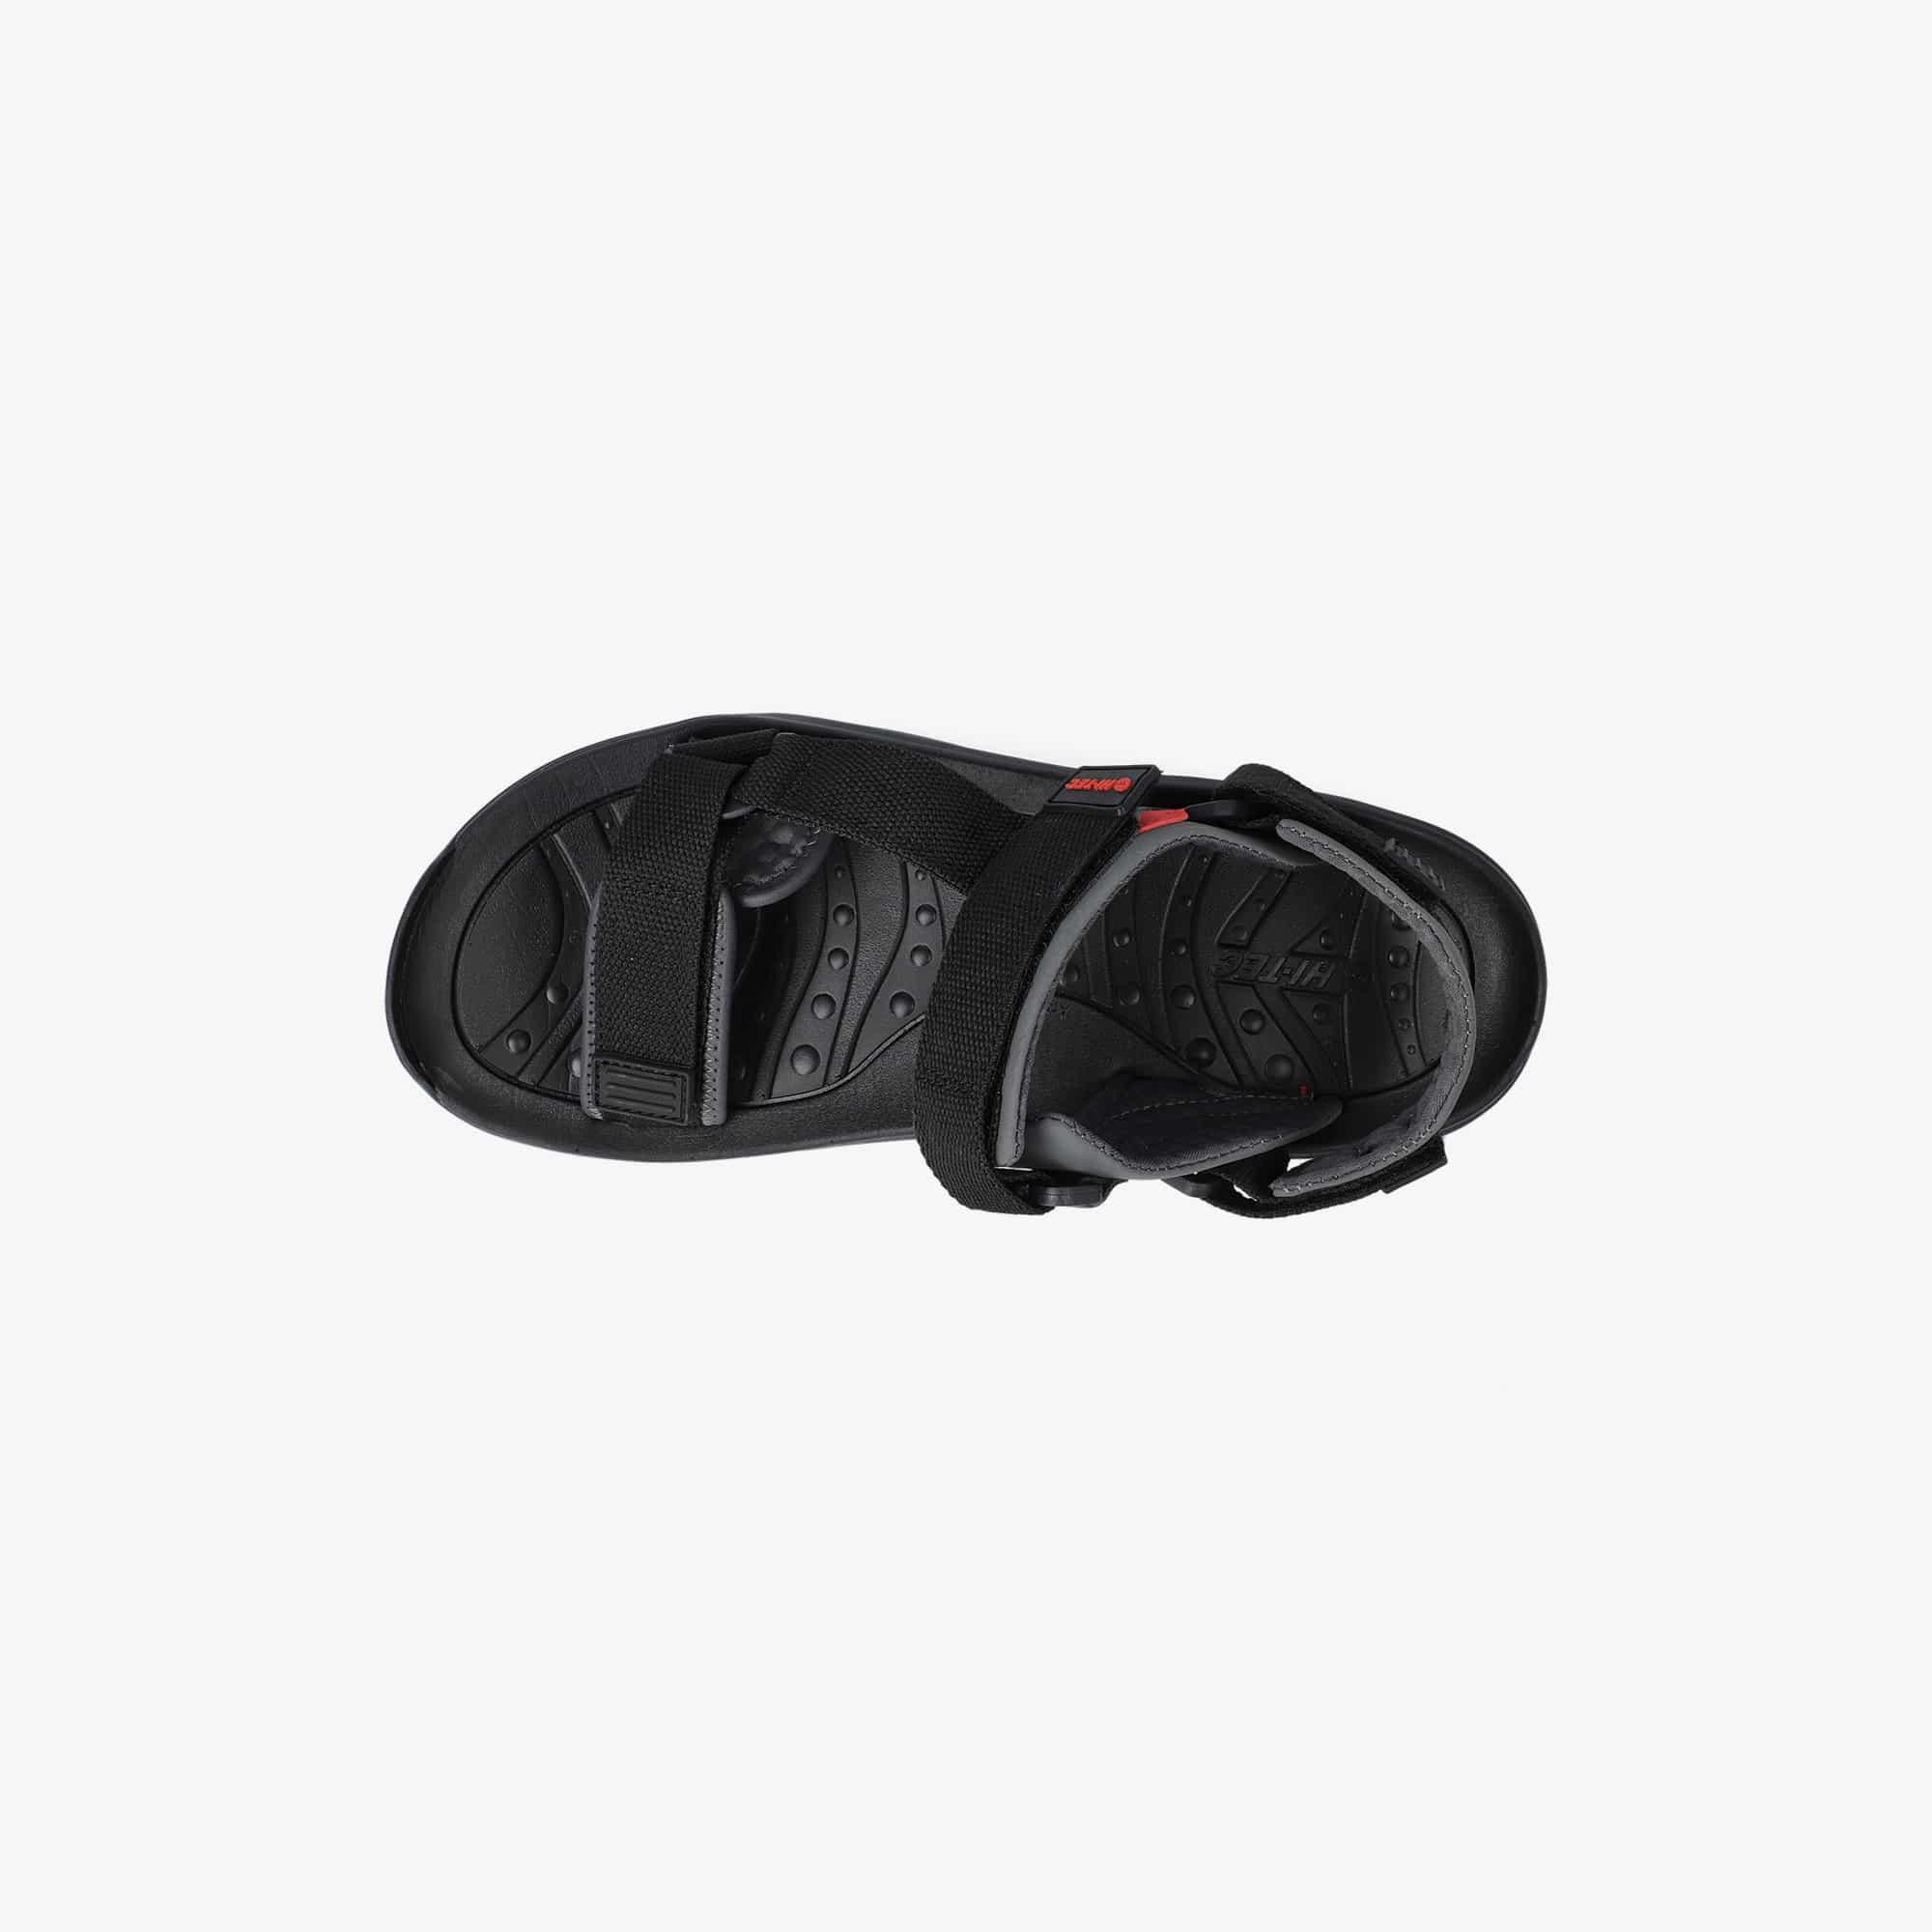 Hi-Tec Mens ULA Raft Shoes Sandals Black Sports Outdoors Breathable